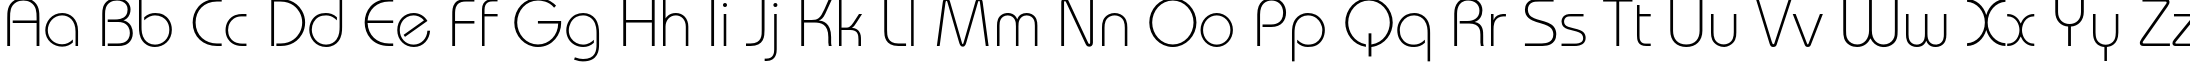 Пример написания английского алфавита шрифтом BauhausLightC